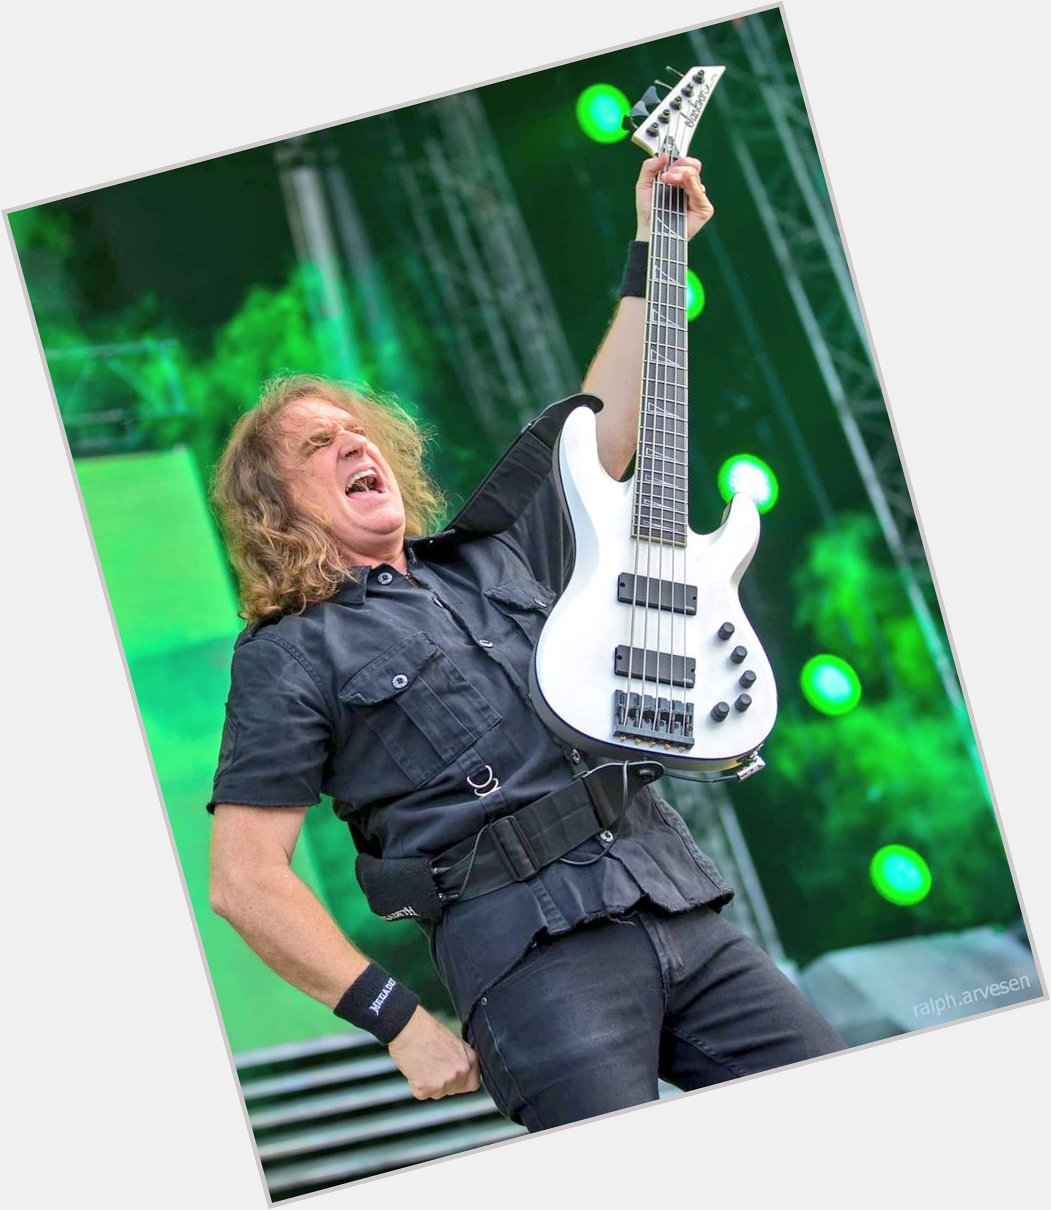 Happy Birthday  David Ellefson, former Megadeth bassist, born today in 1964 57 